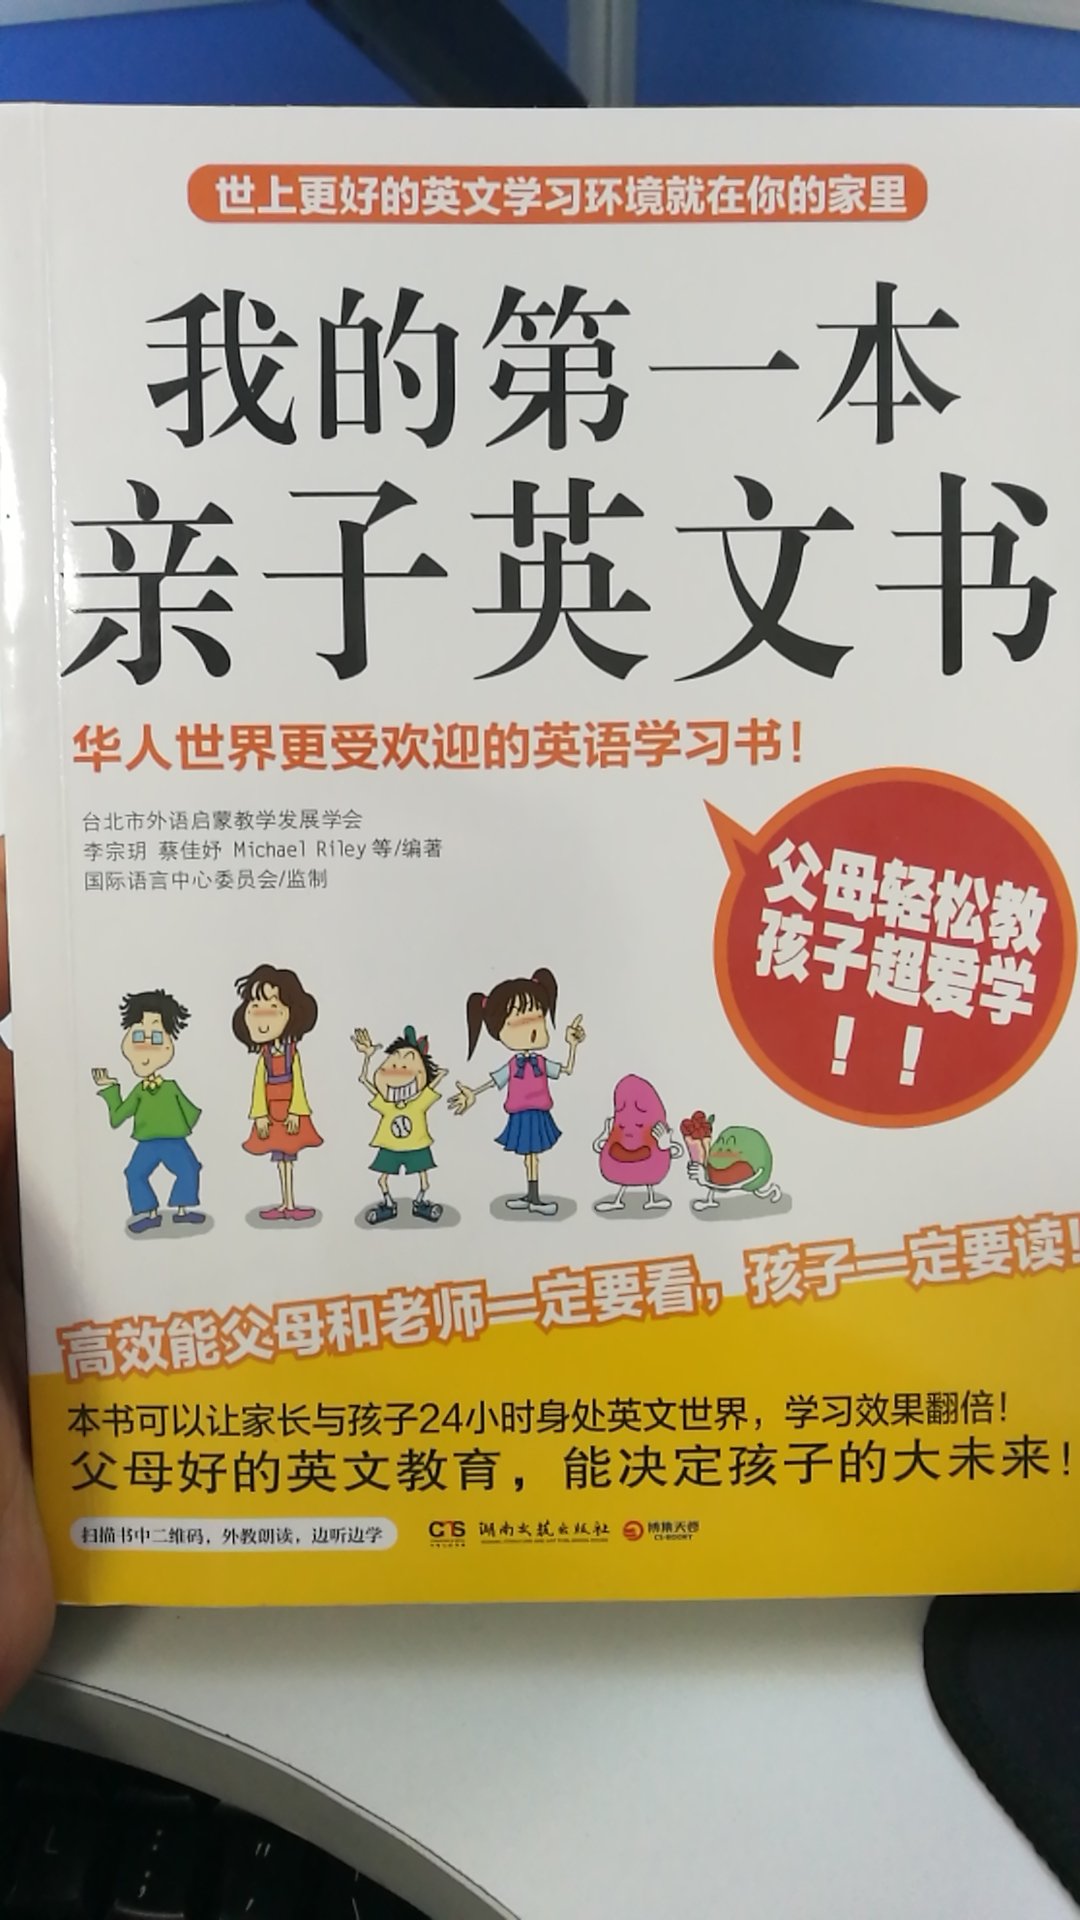 非常好，为孩子学习英语打好基础，买书很多了，全力支持！